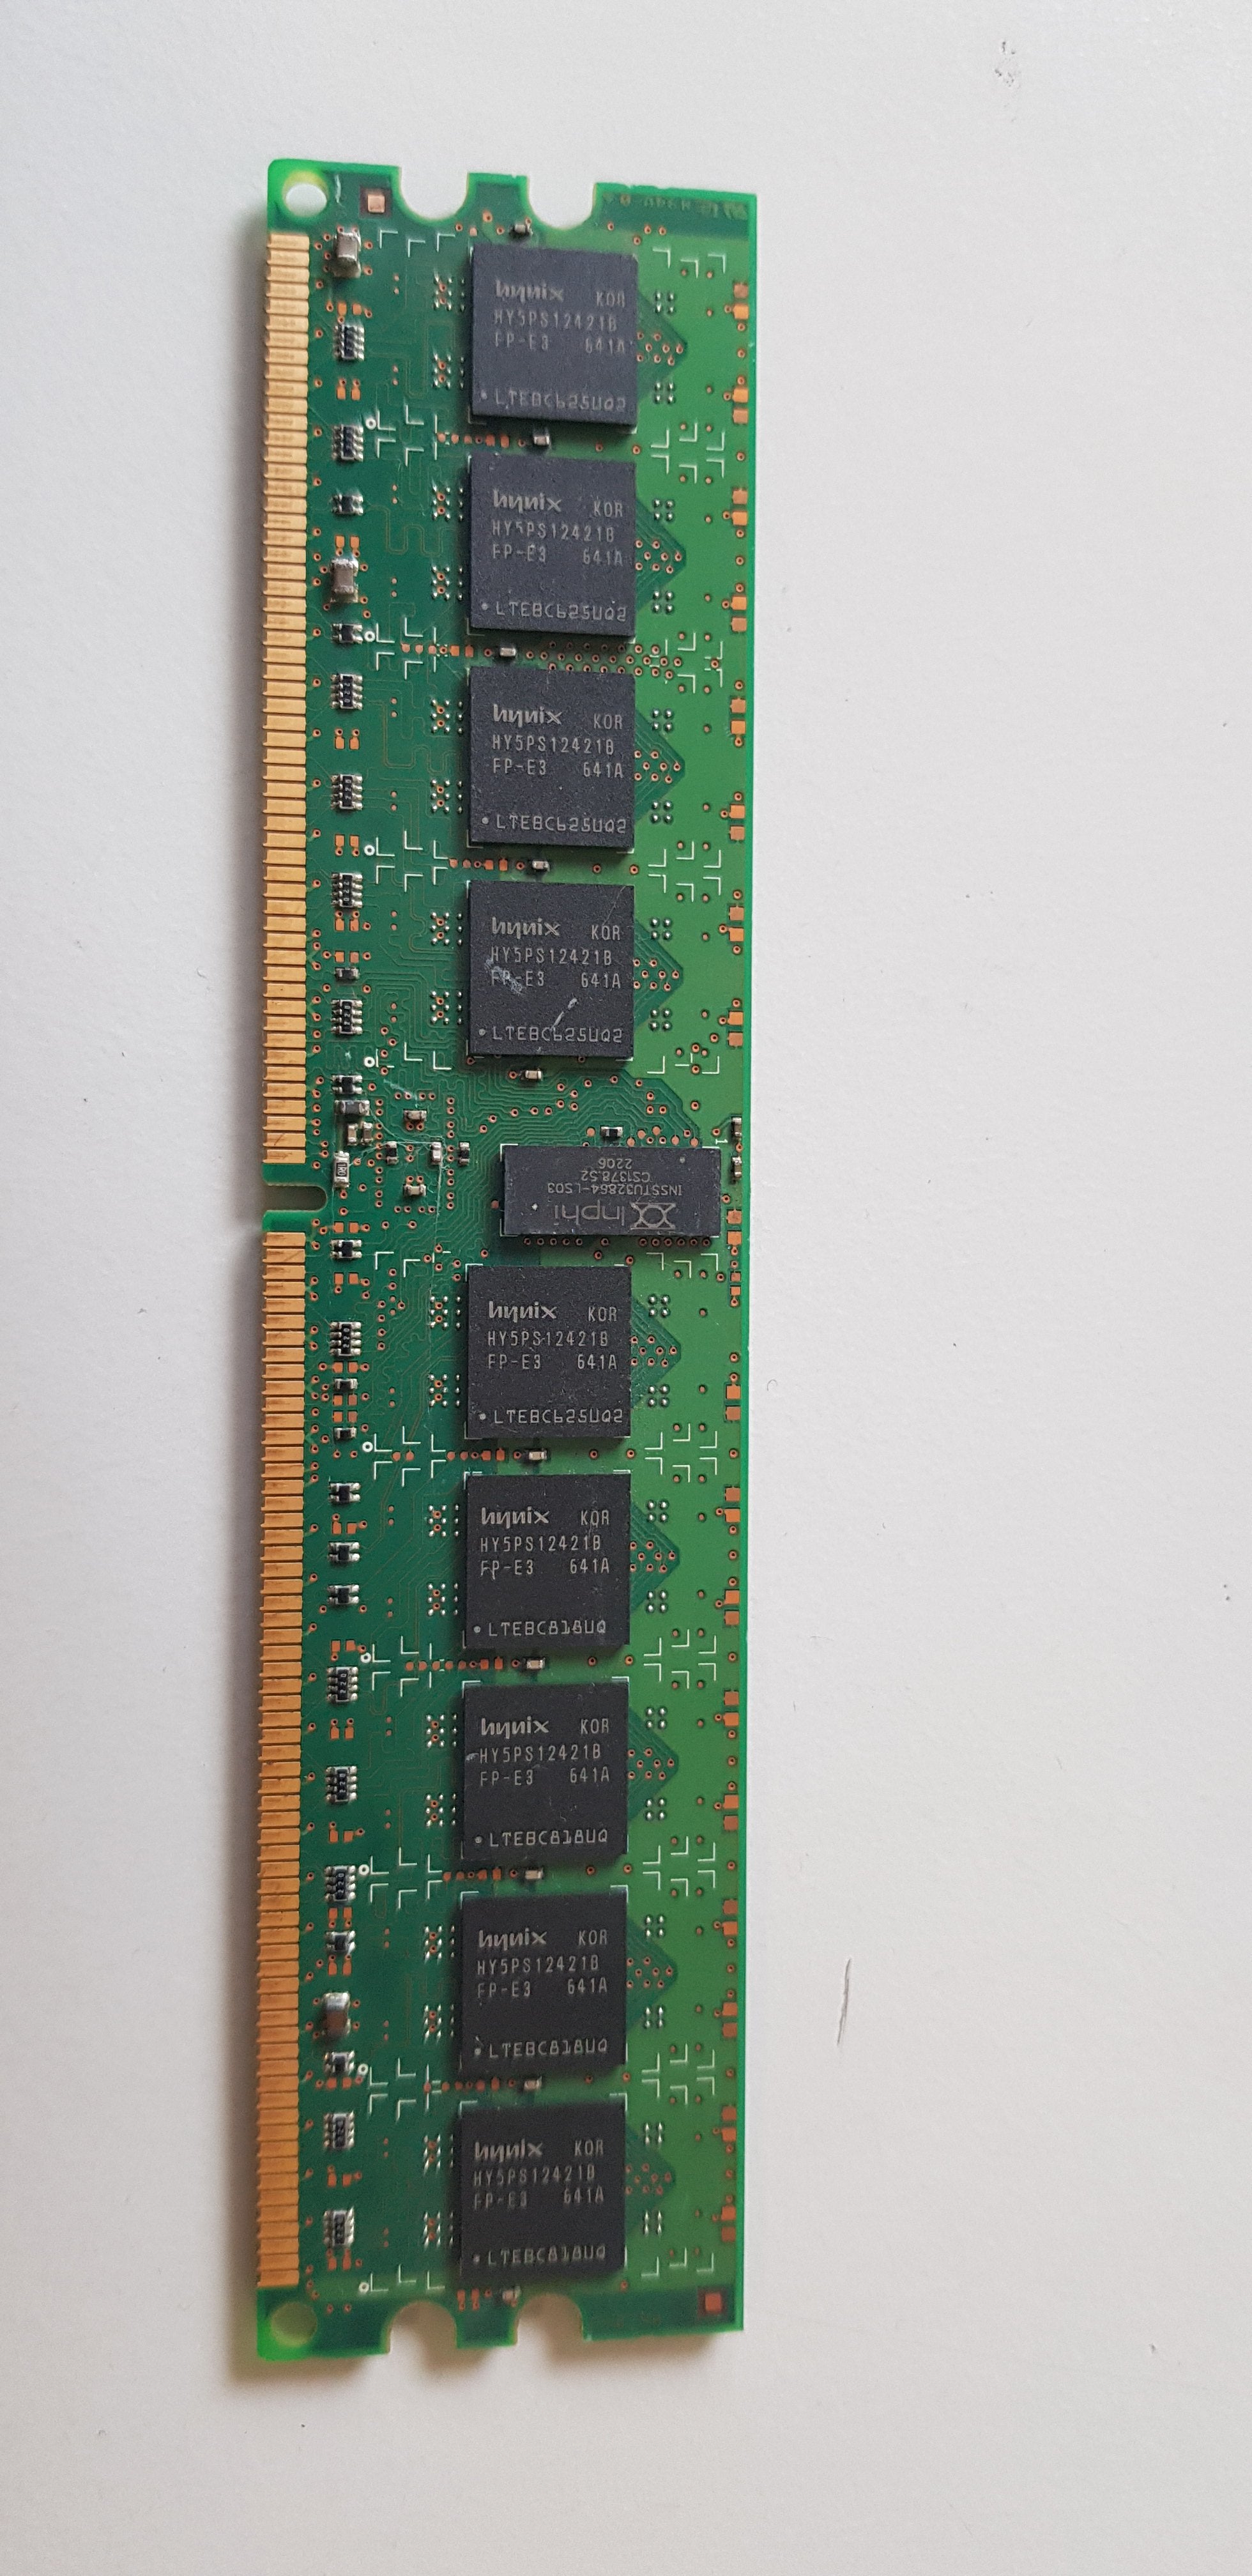 Hynix / IBM 1GB 1Rx4 PC2 -3200 DDR2-400MHz ECC Registered CL3 240-Pin DIMM Single Rank Memory Module (HYMP512R72BP4-E3 / 38L5915)